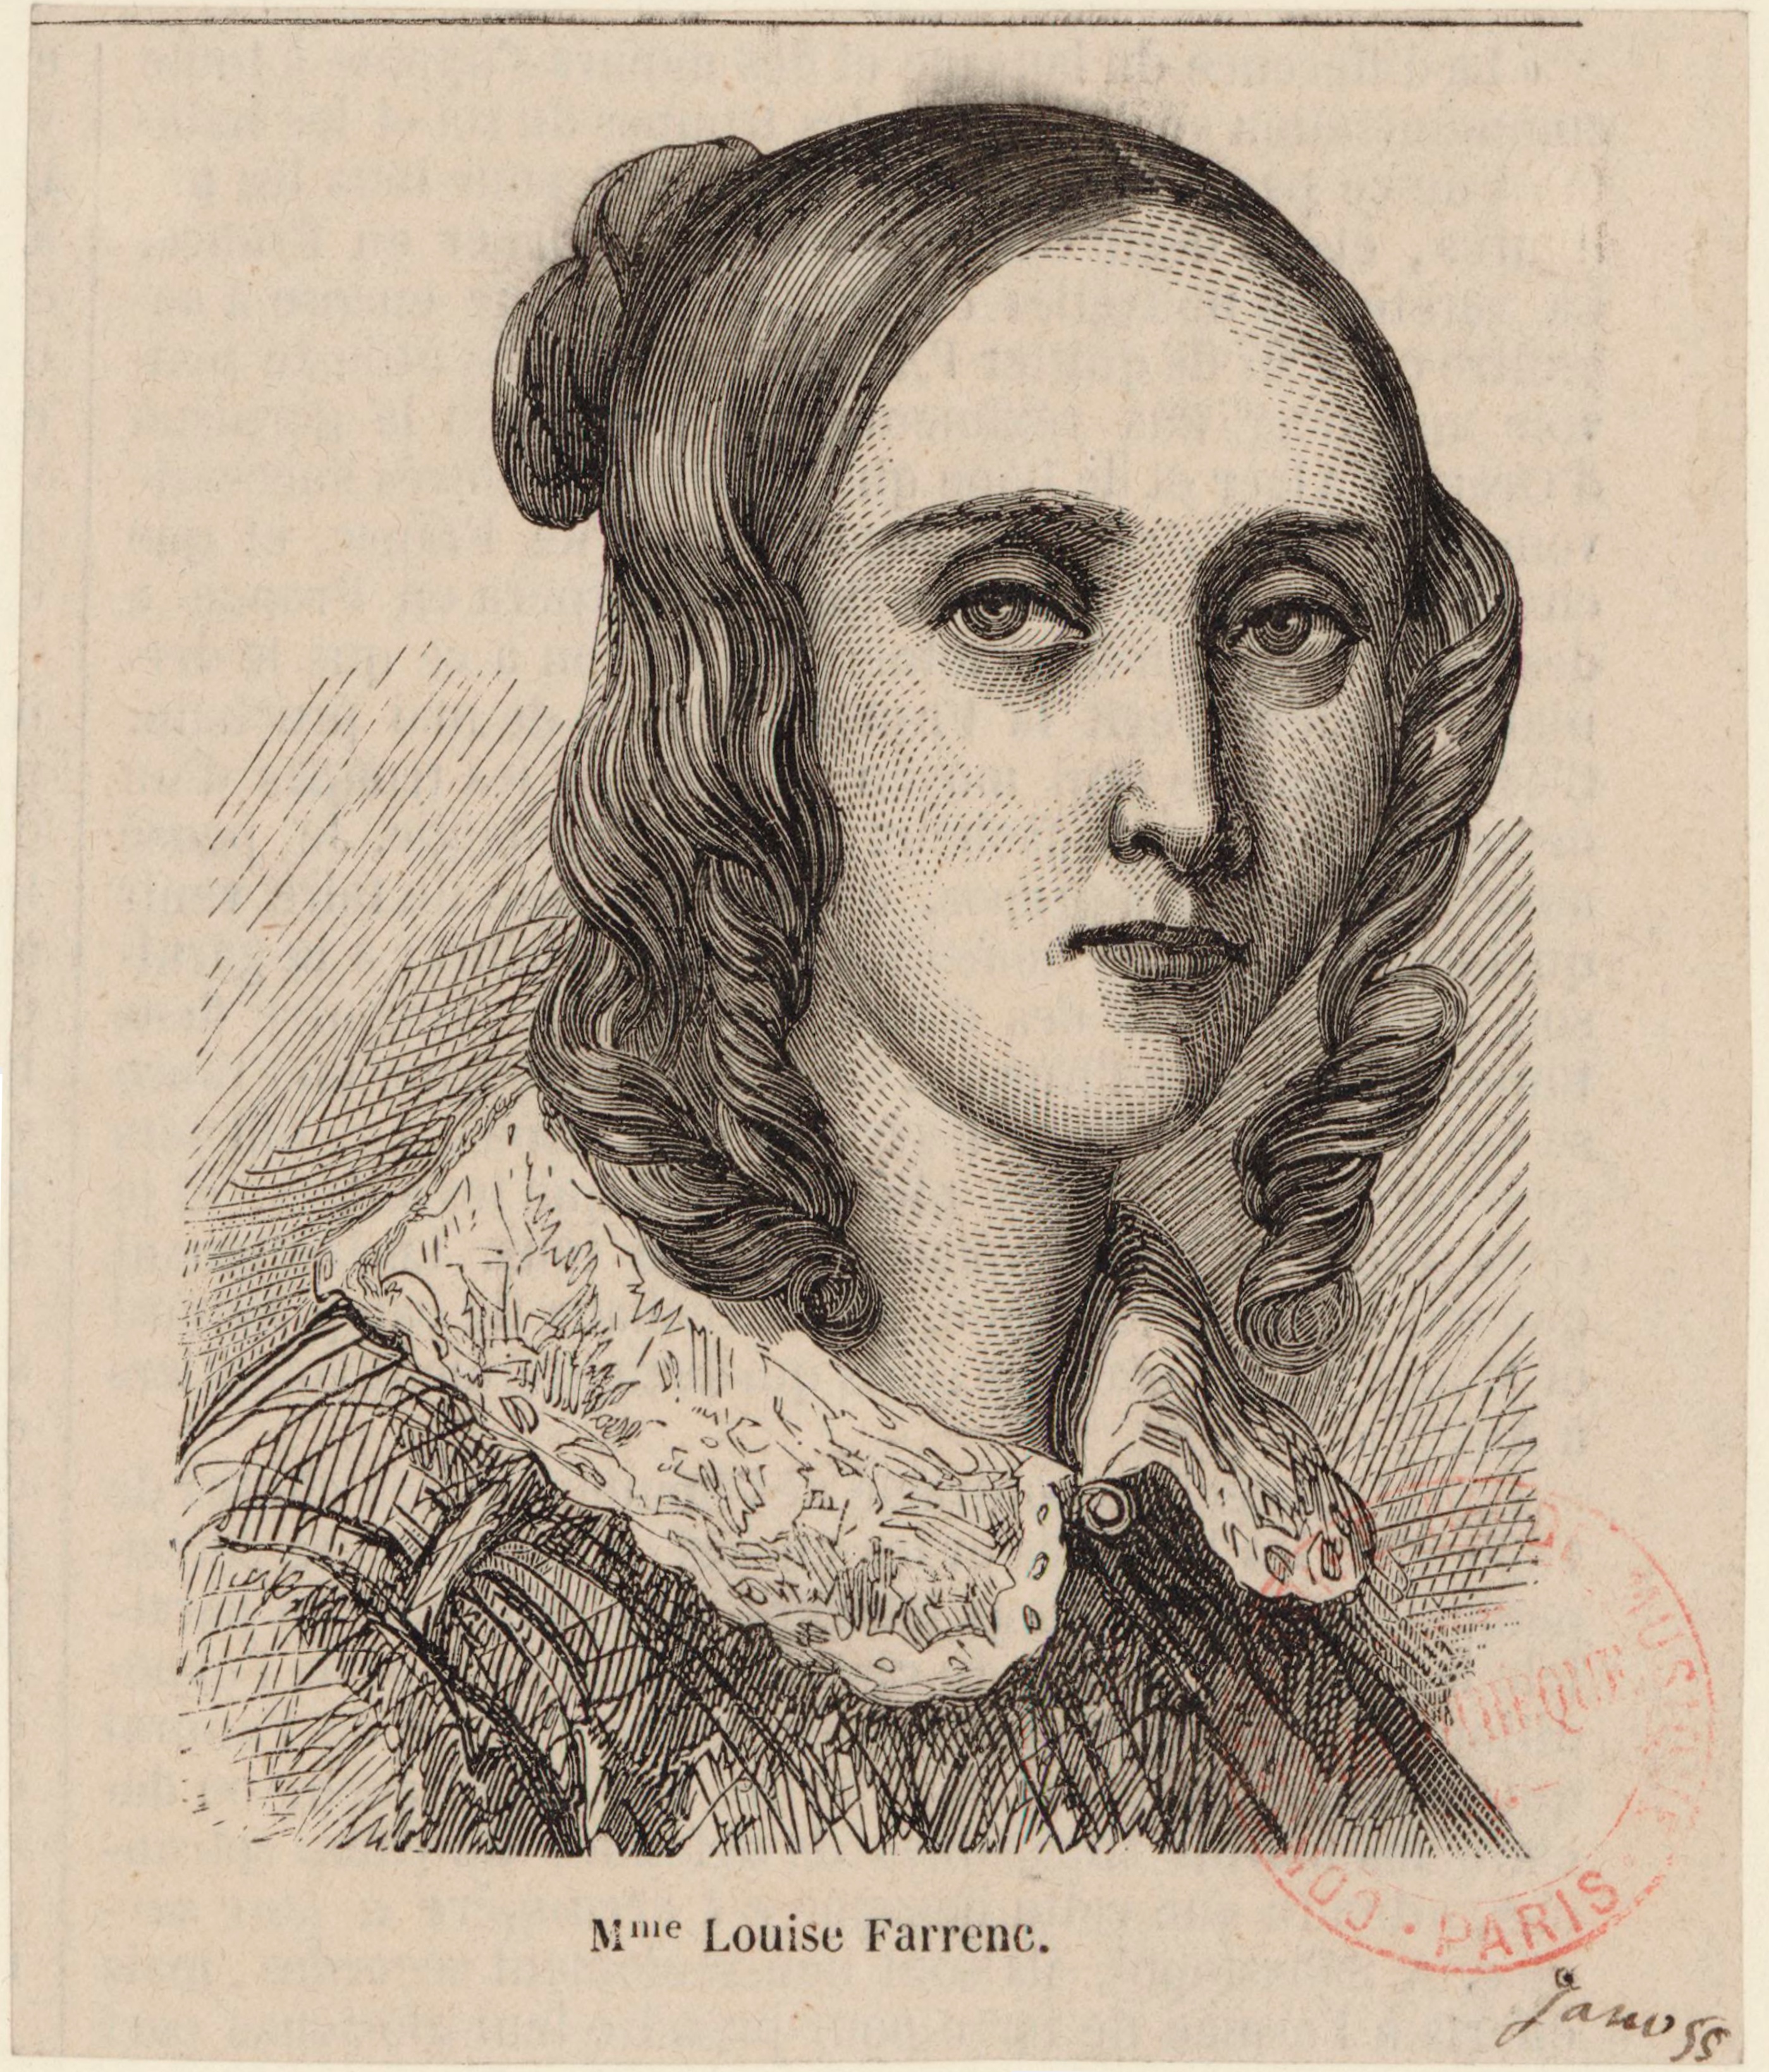 Louise Farrenc (née Jeanne-Louise Dumont), c. 1855, Bibliothèque nationale de France.